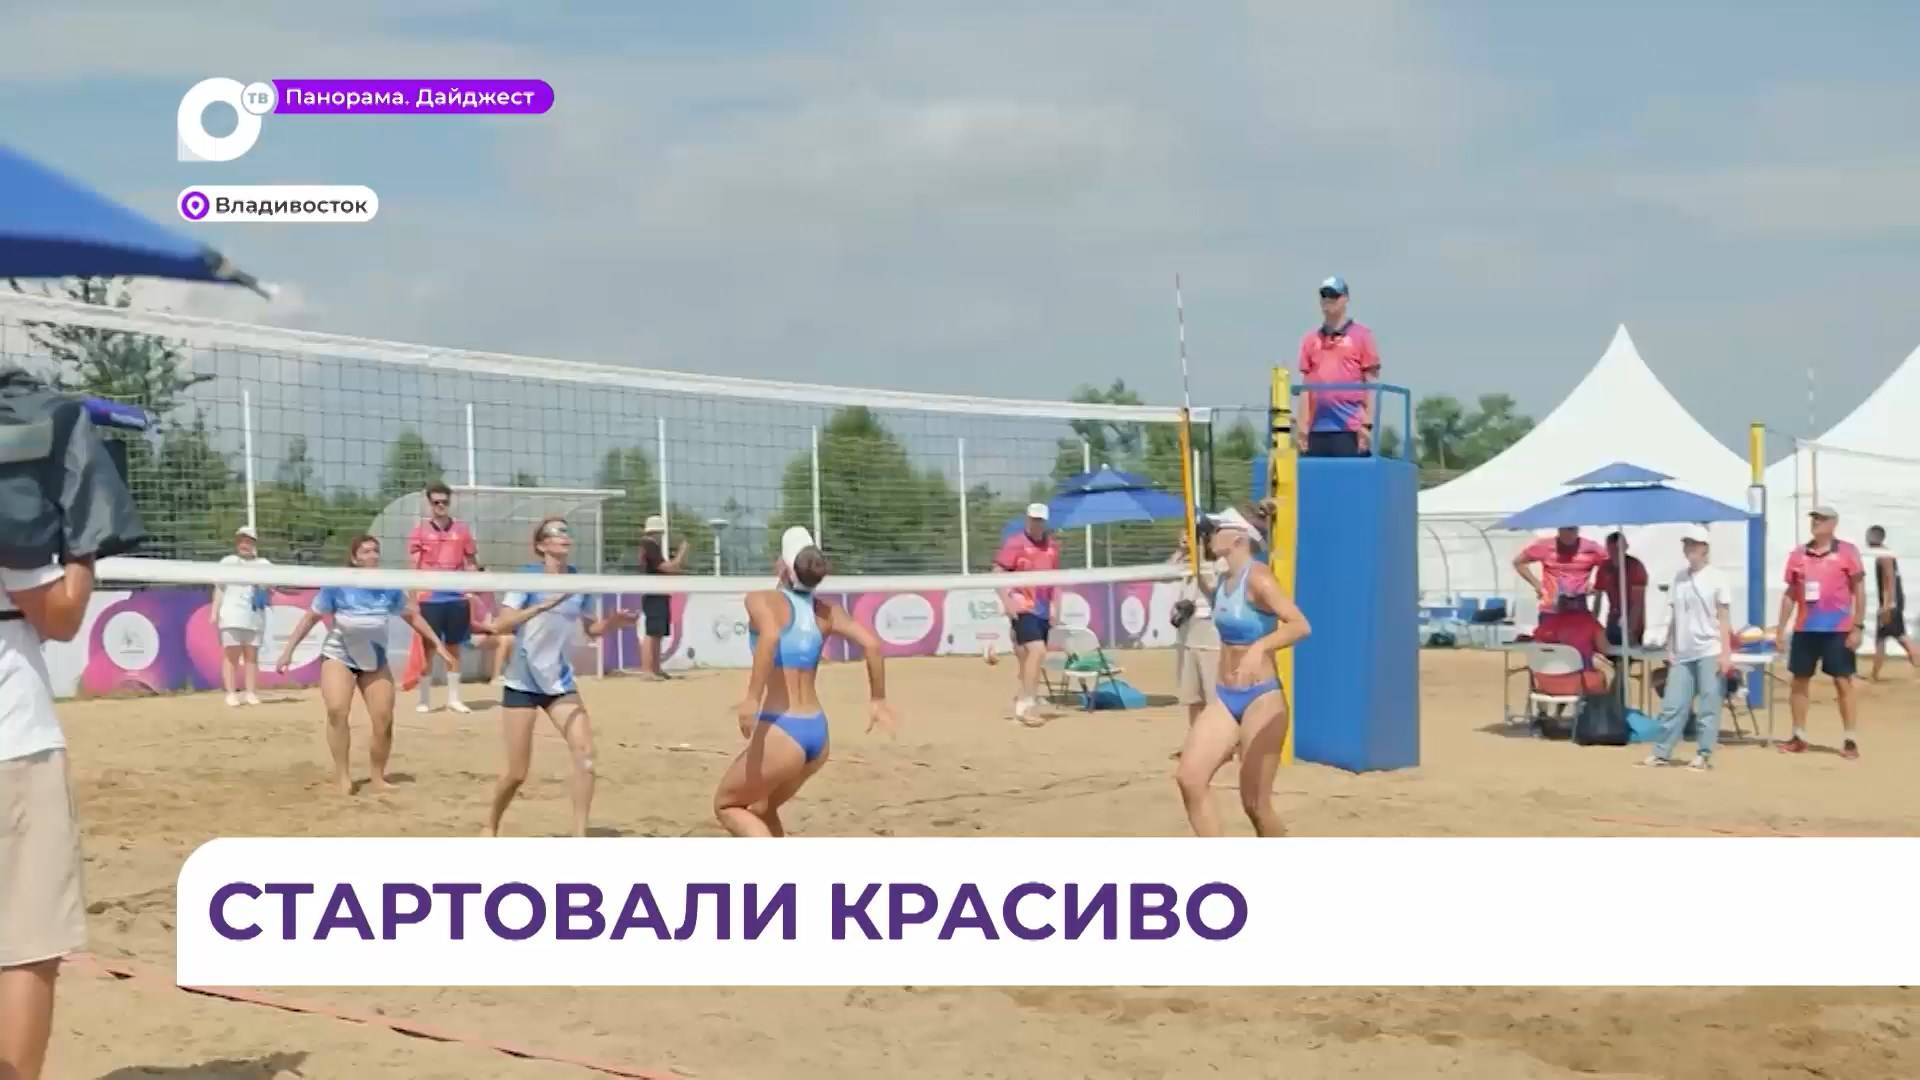 Состязания по пляжному волейболу, мини-футболу и теннису прошли в первый день студенческих игр